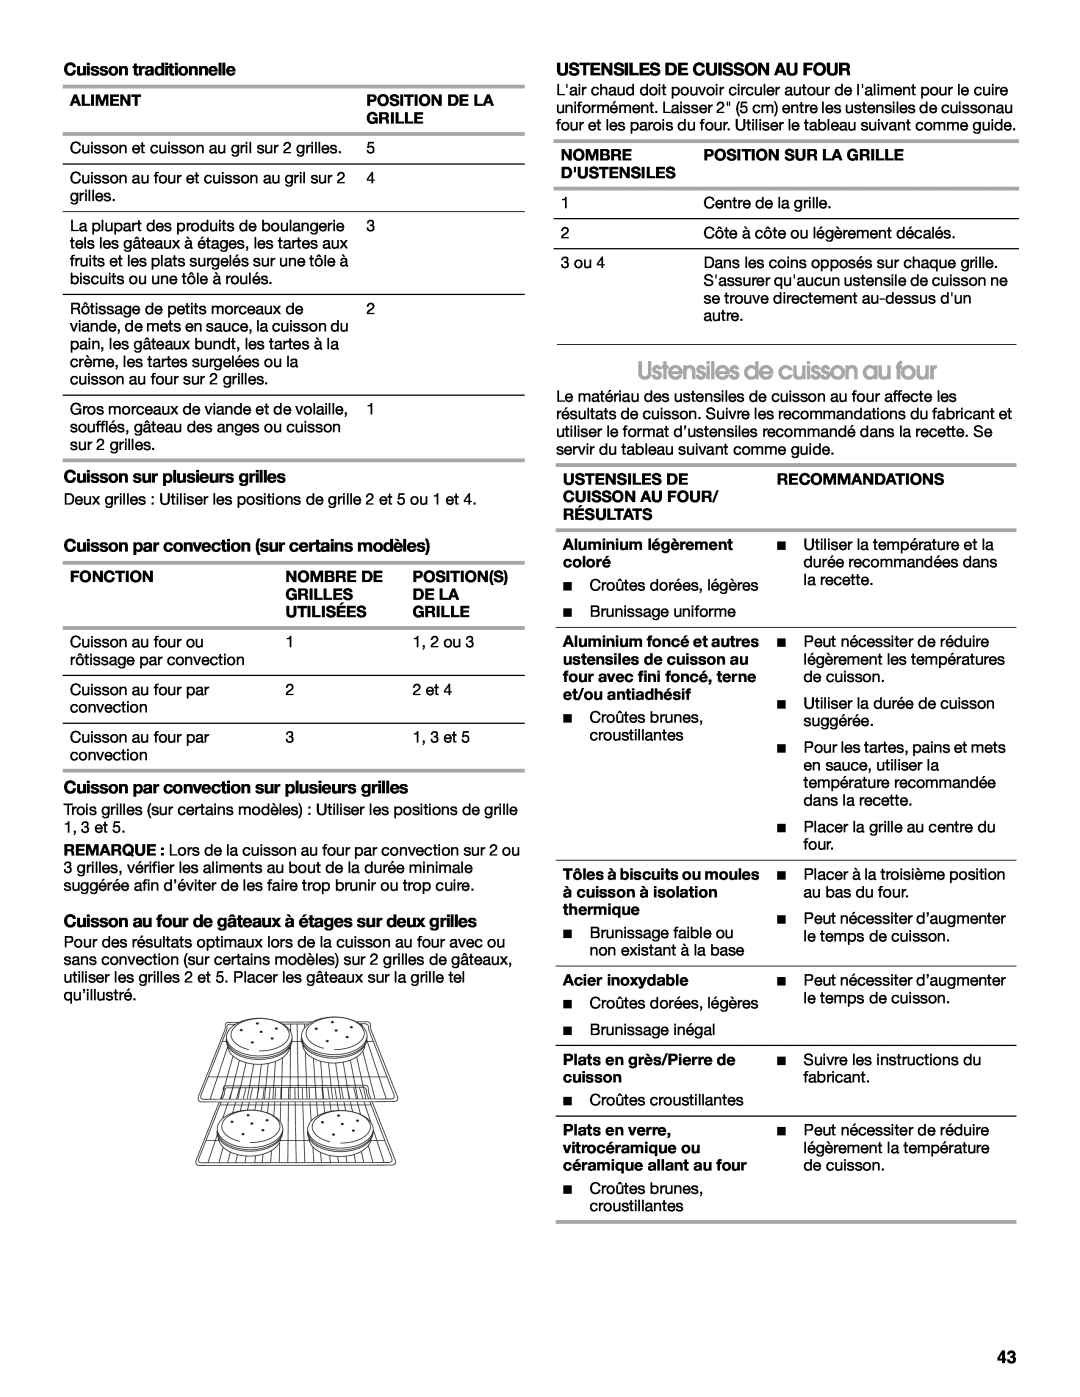 Jenn-Air JDS8860 manual Ustensiles de cuisson au four, Cuisson traditionnelle, Cuisson sur plusieurs grilles 